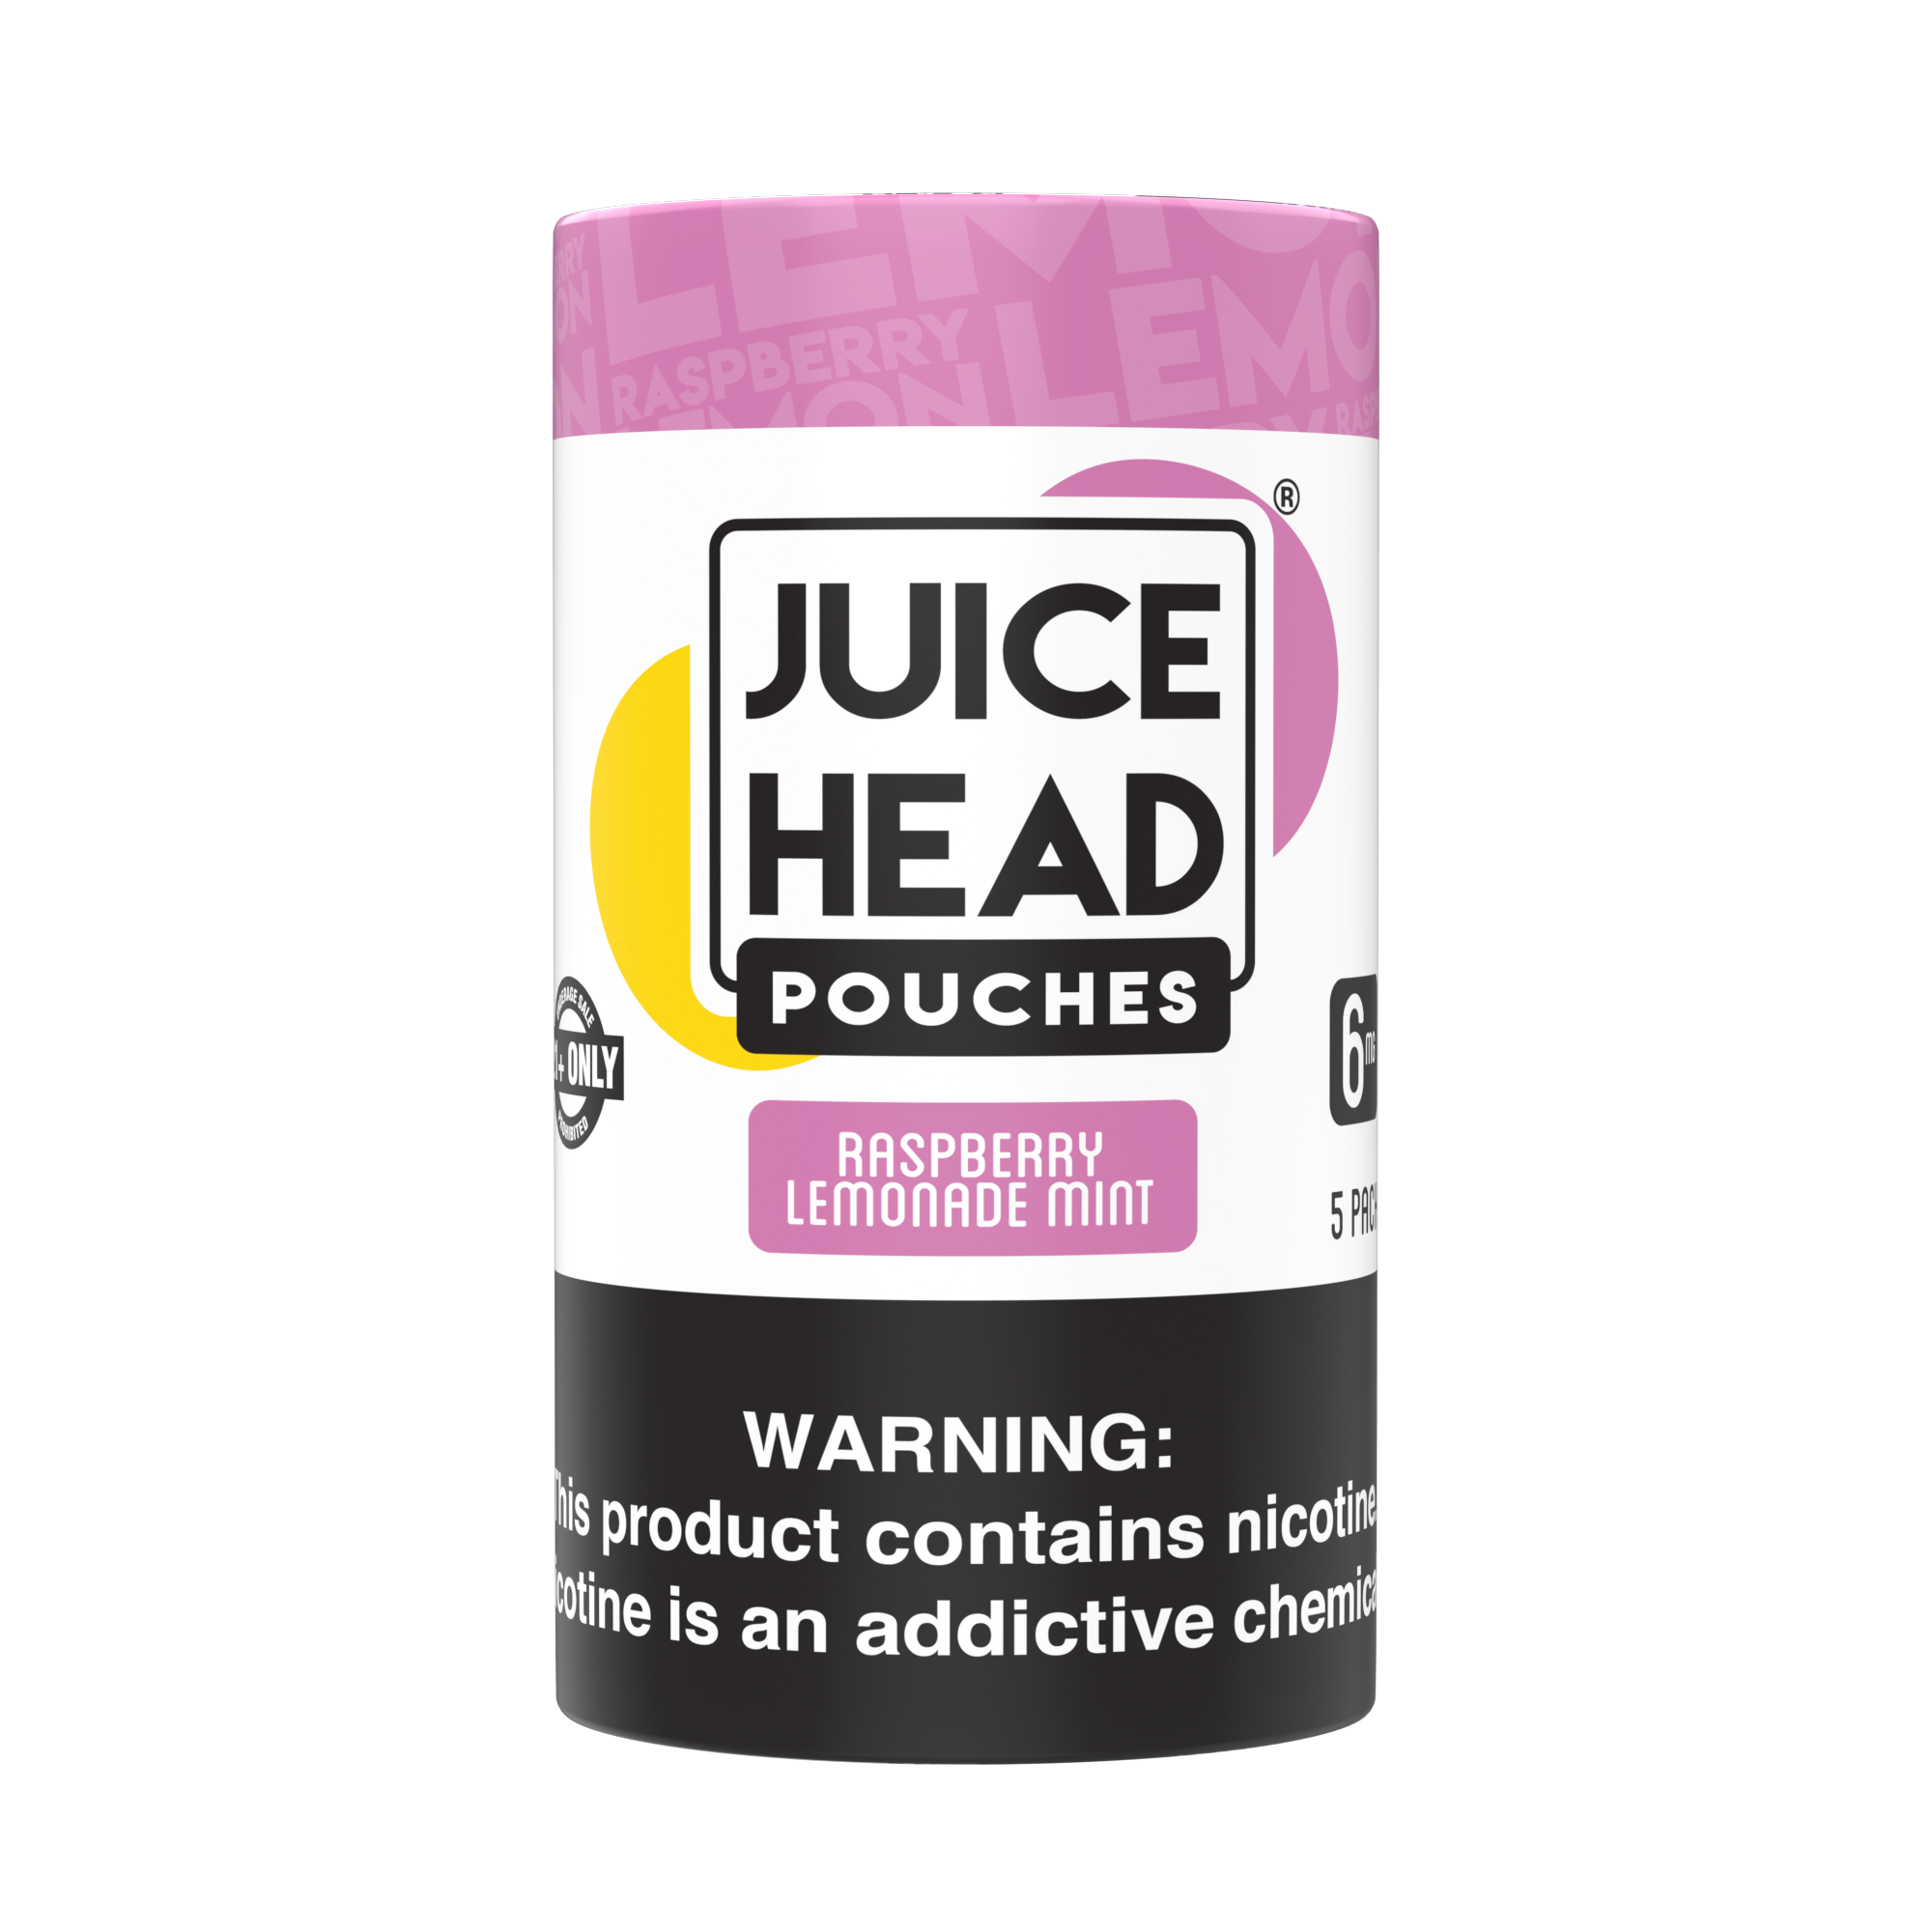 JUICE HEAD POUCHES - Raspberry Lemonade Mint